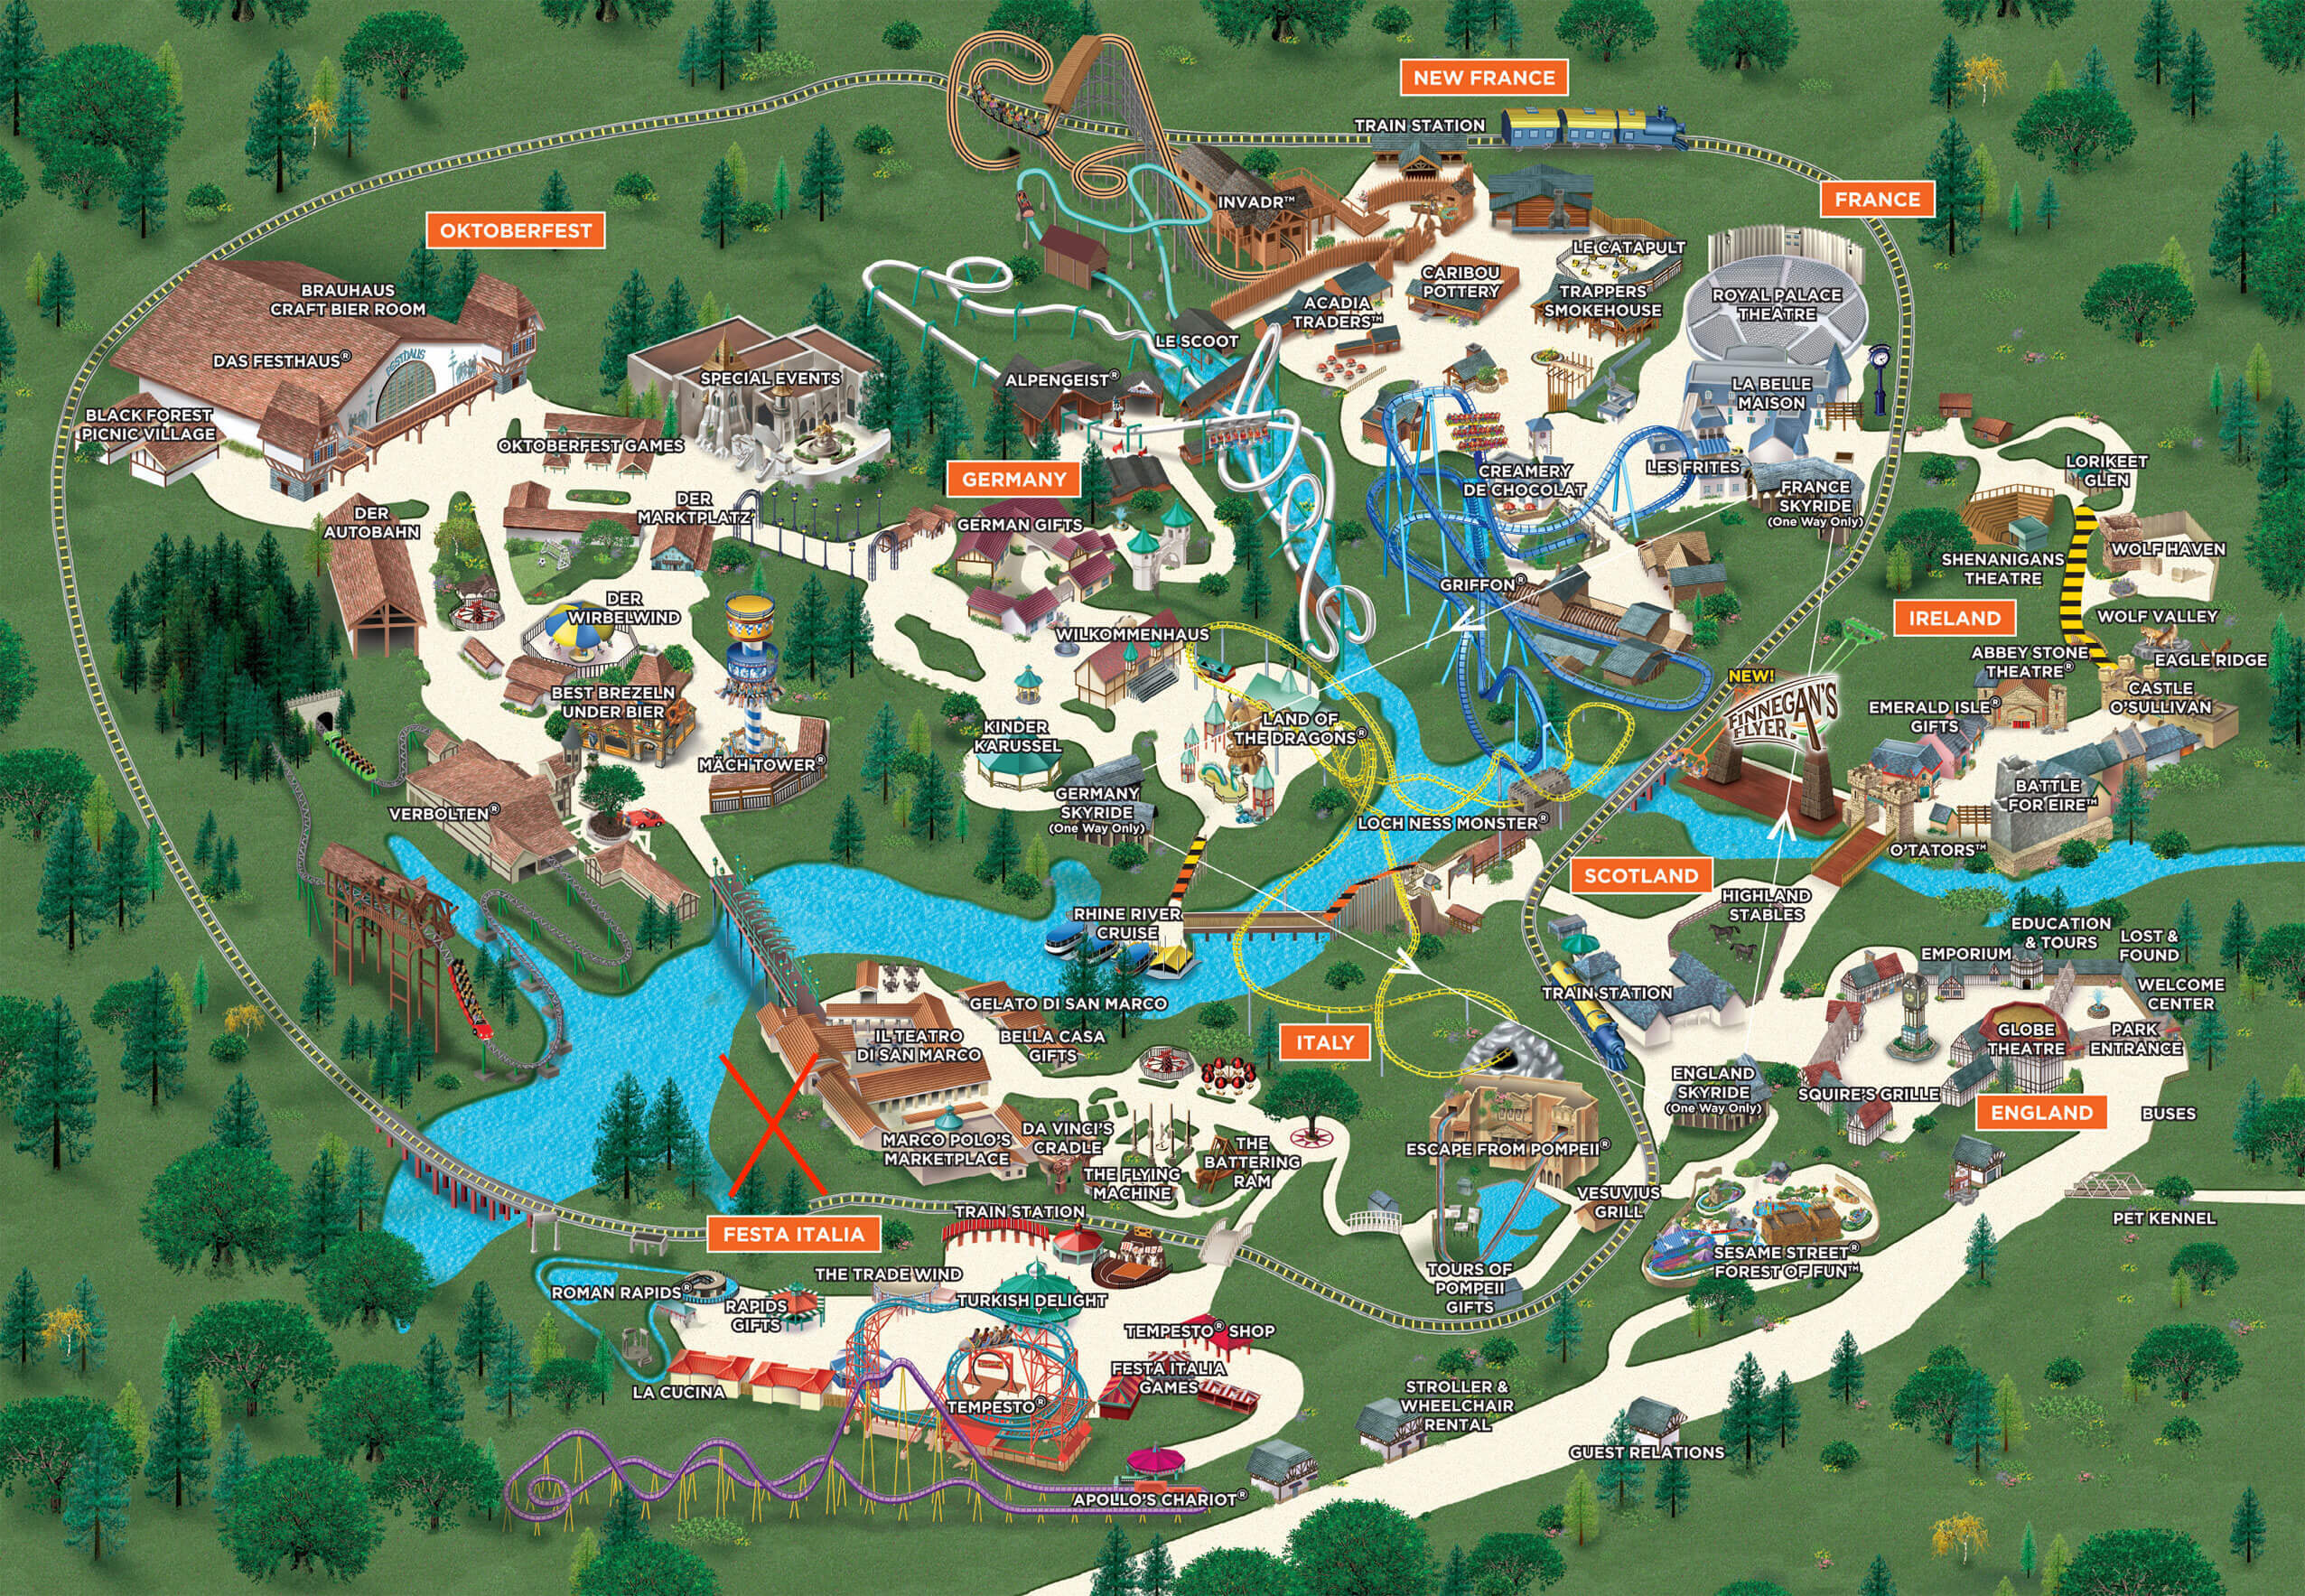 Pantheon Busch Gardens Williamsburg s Newest Roller Coaster To Open March 2022 Williamsburg